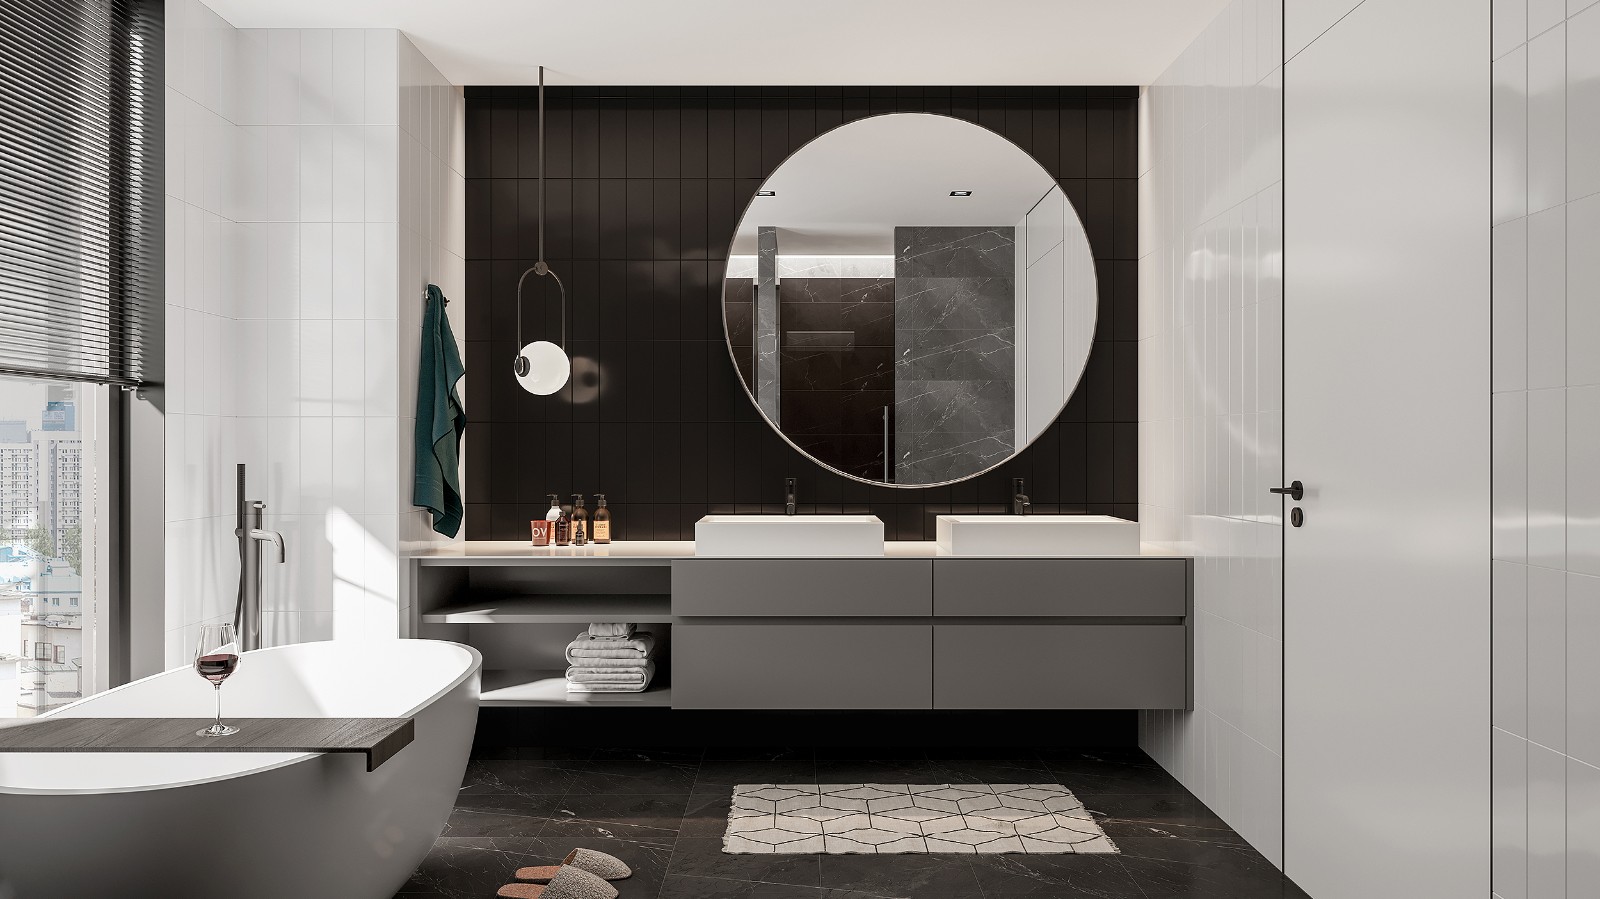 黑色砖面肌理搭配灰色洗手台，在灯光的烘托下，营造出素色的卫浴空间。